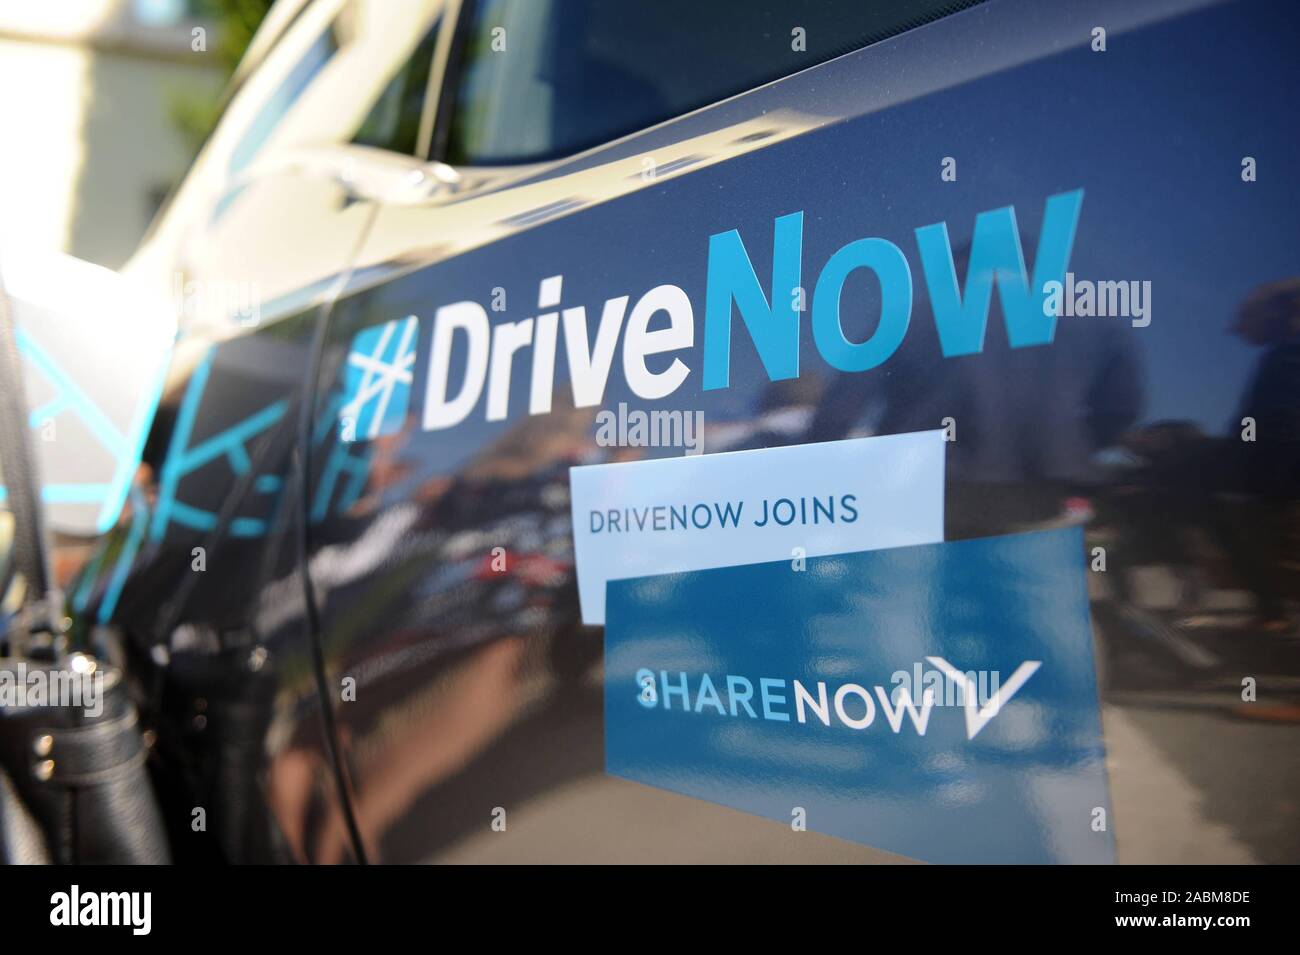 Fahrzeug des Carsharing anbieter hareNow', DriveNow und car2go zusammengeführt, eine gemeinsame Carsharing Service des BWW und Damiler zu bilden. [Automatisierte Übersetzung] Stockfoto